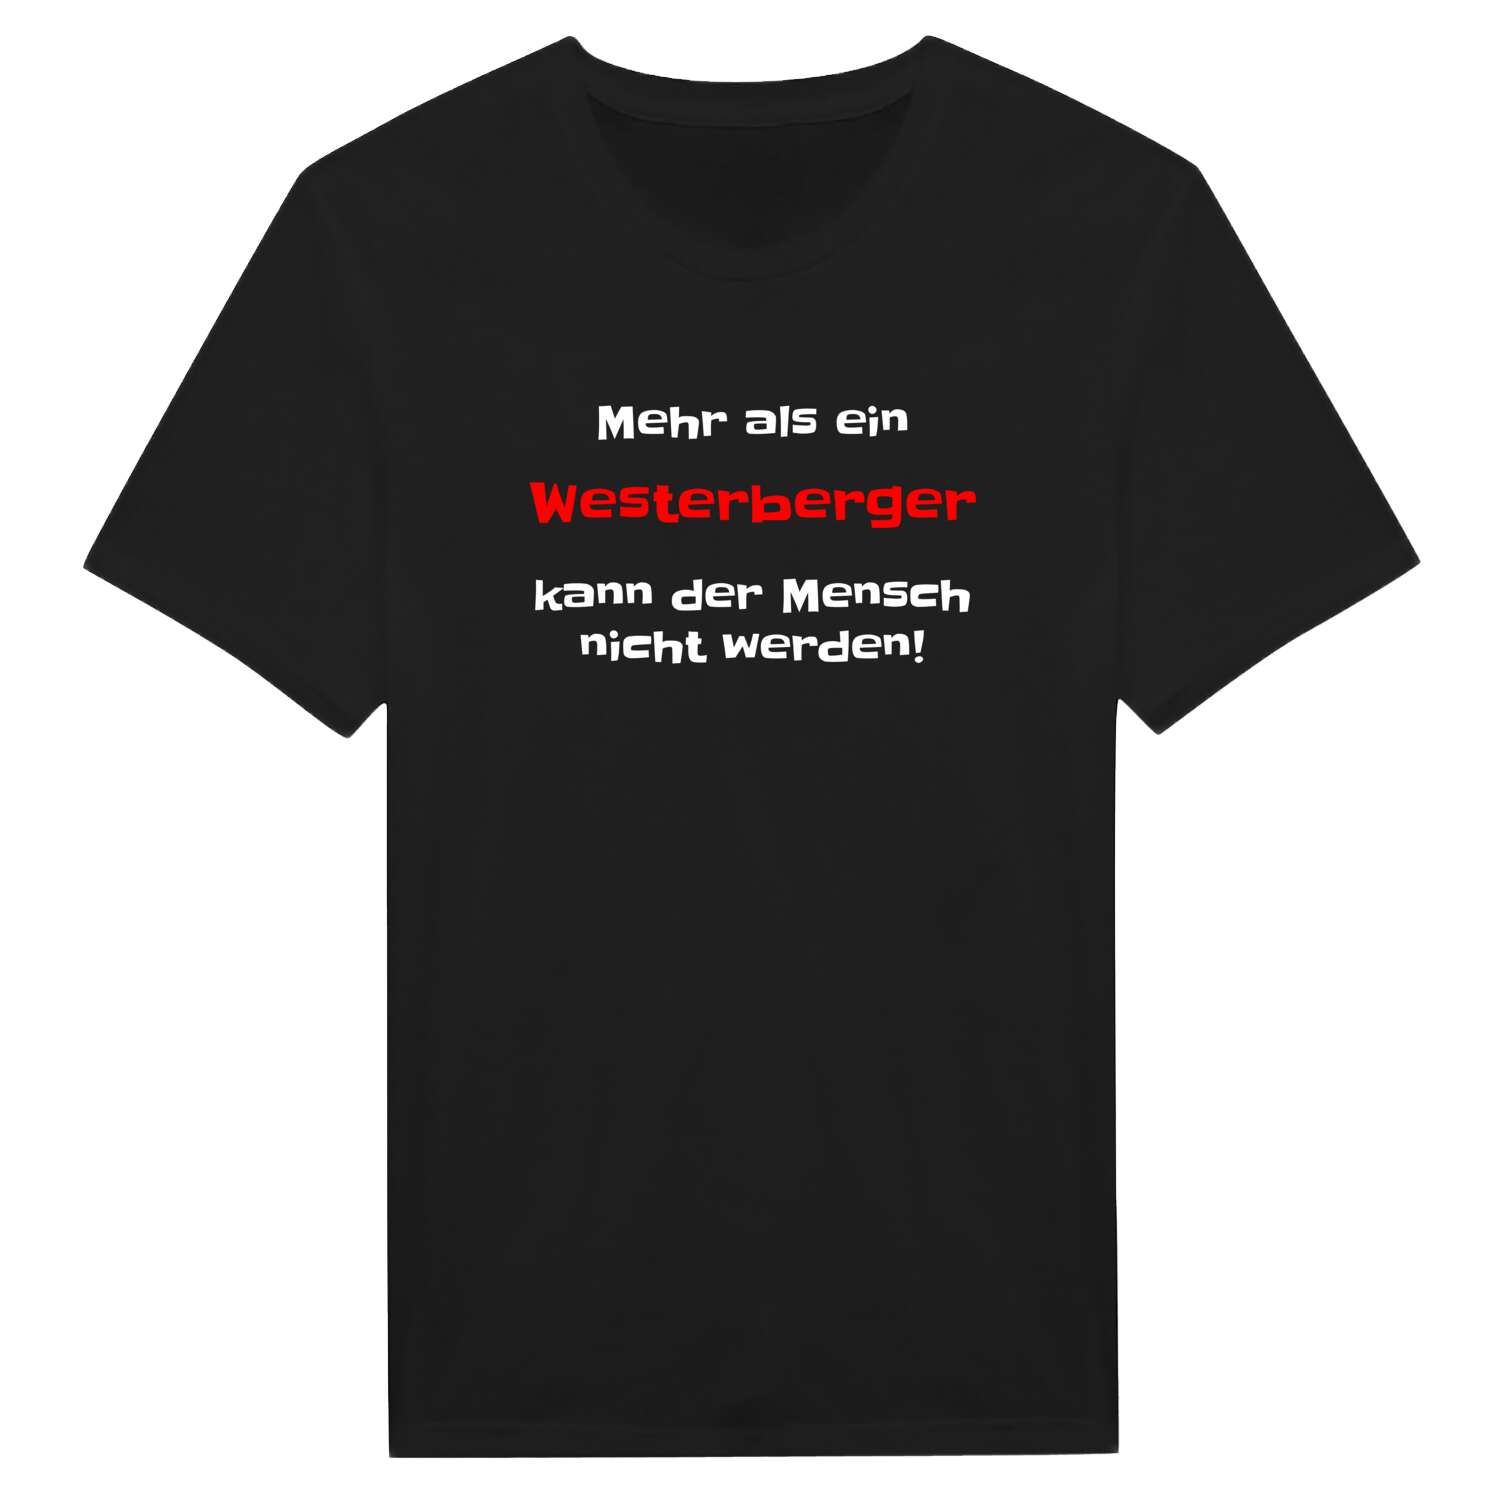 Westerberg T-Shirt »Mehr als ein«